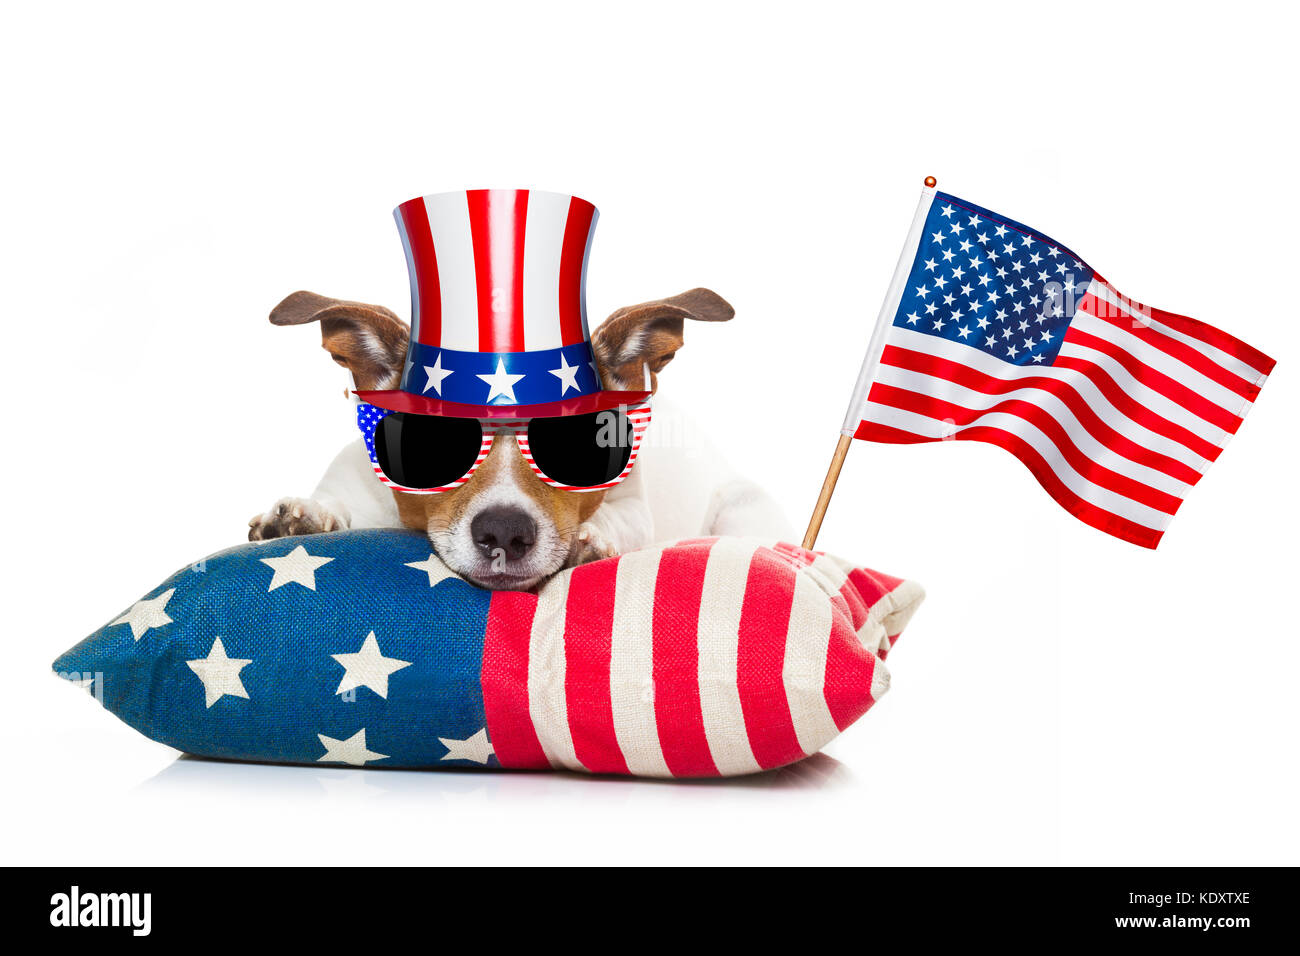 Perro Jack Russell celebrando el 4 de julio, día de la independencia vacaciones con bandera americana y gafas de sol, aislado sobre fondo blanco. Foto de stock